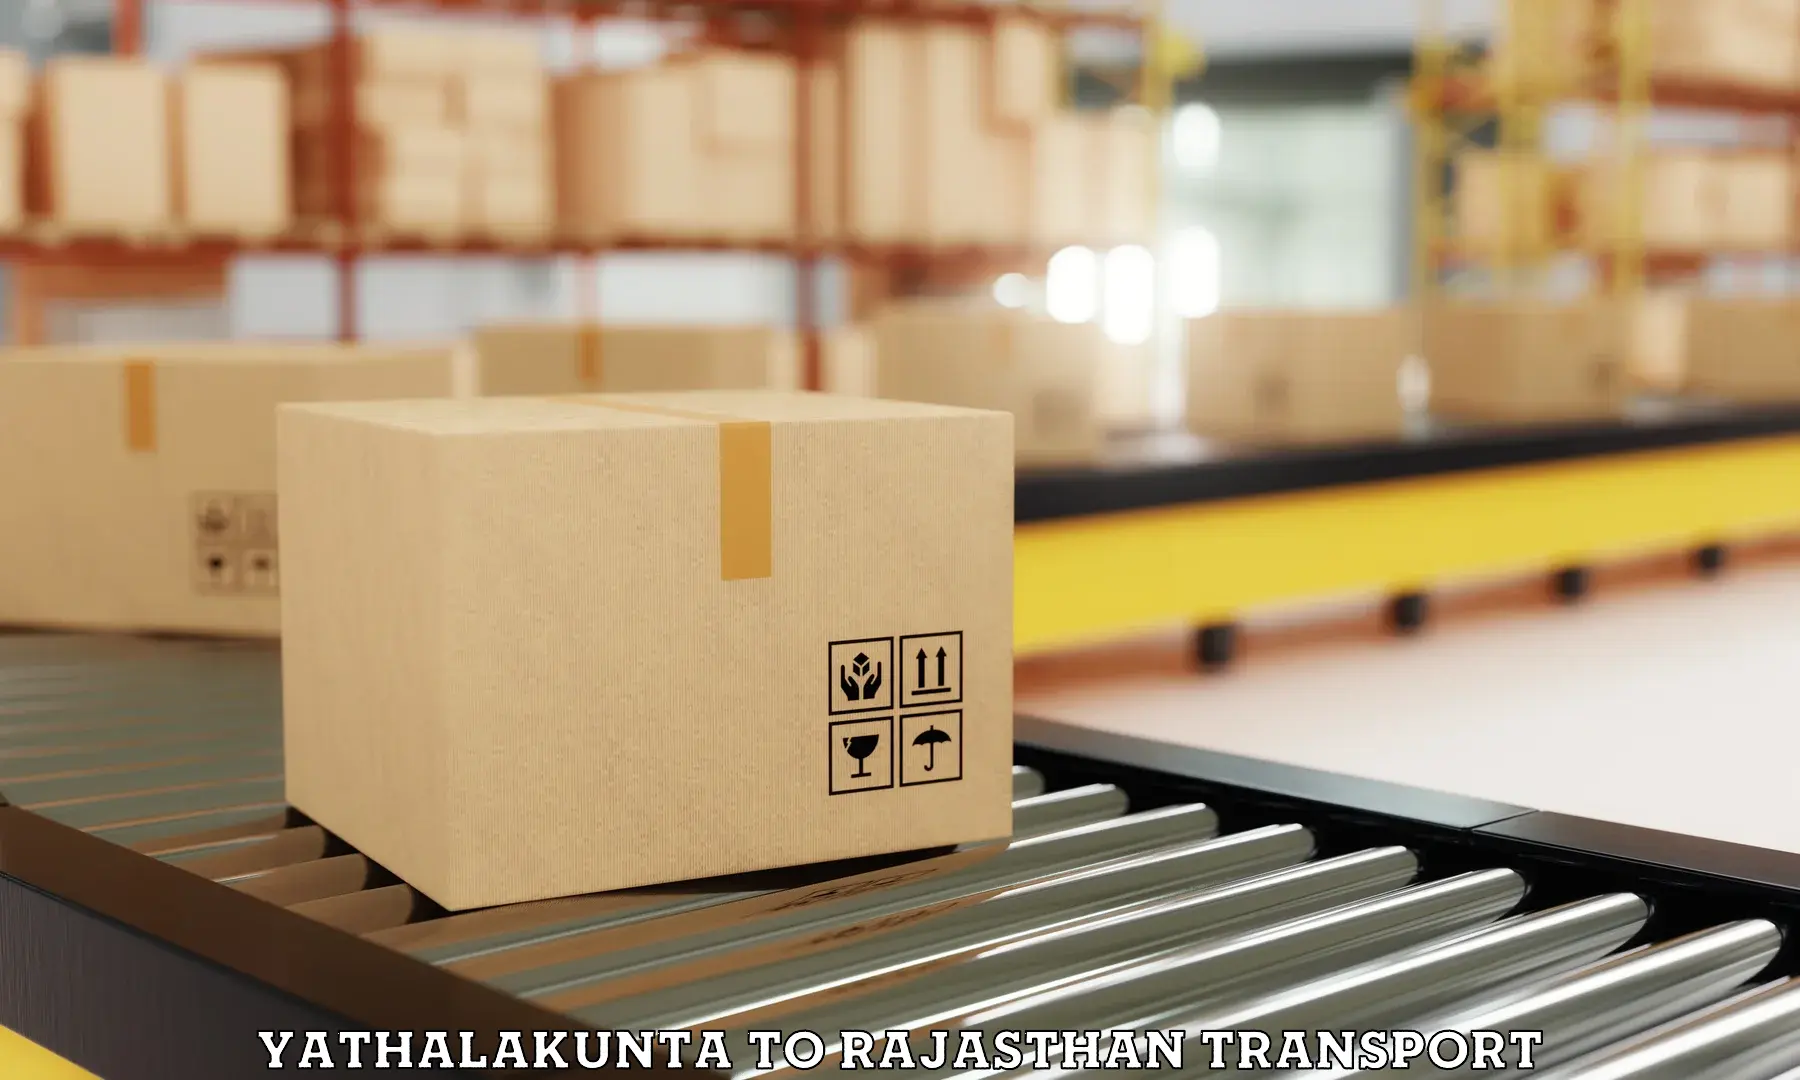 Furniture transport service Yathalakunta to Khairthal